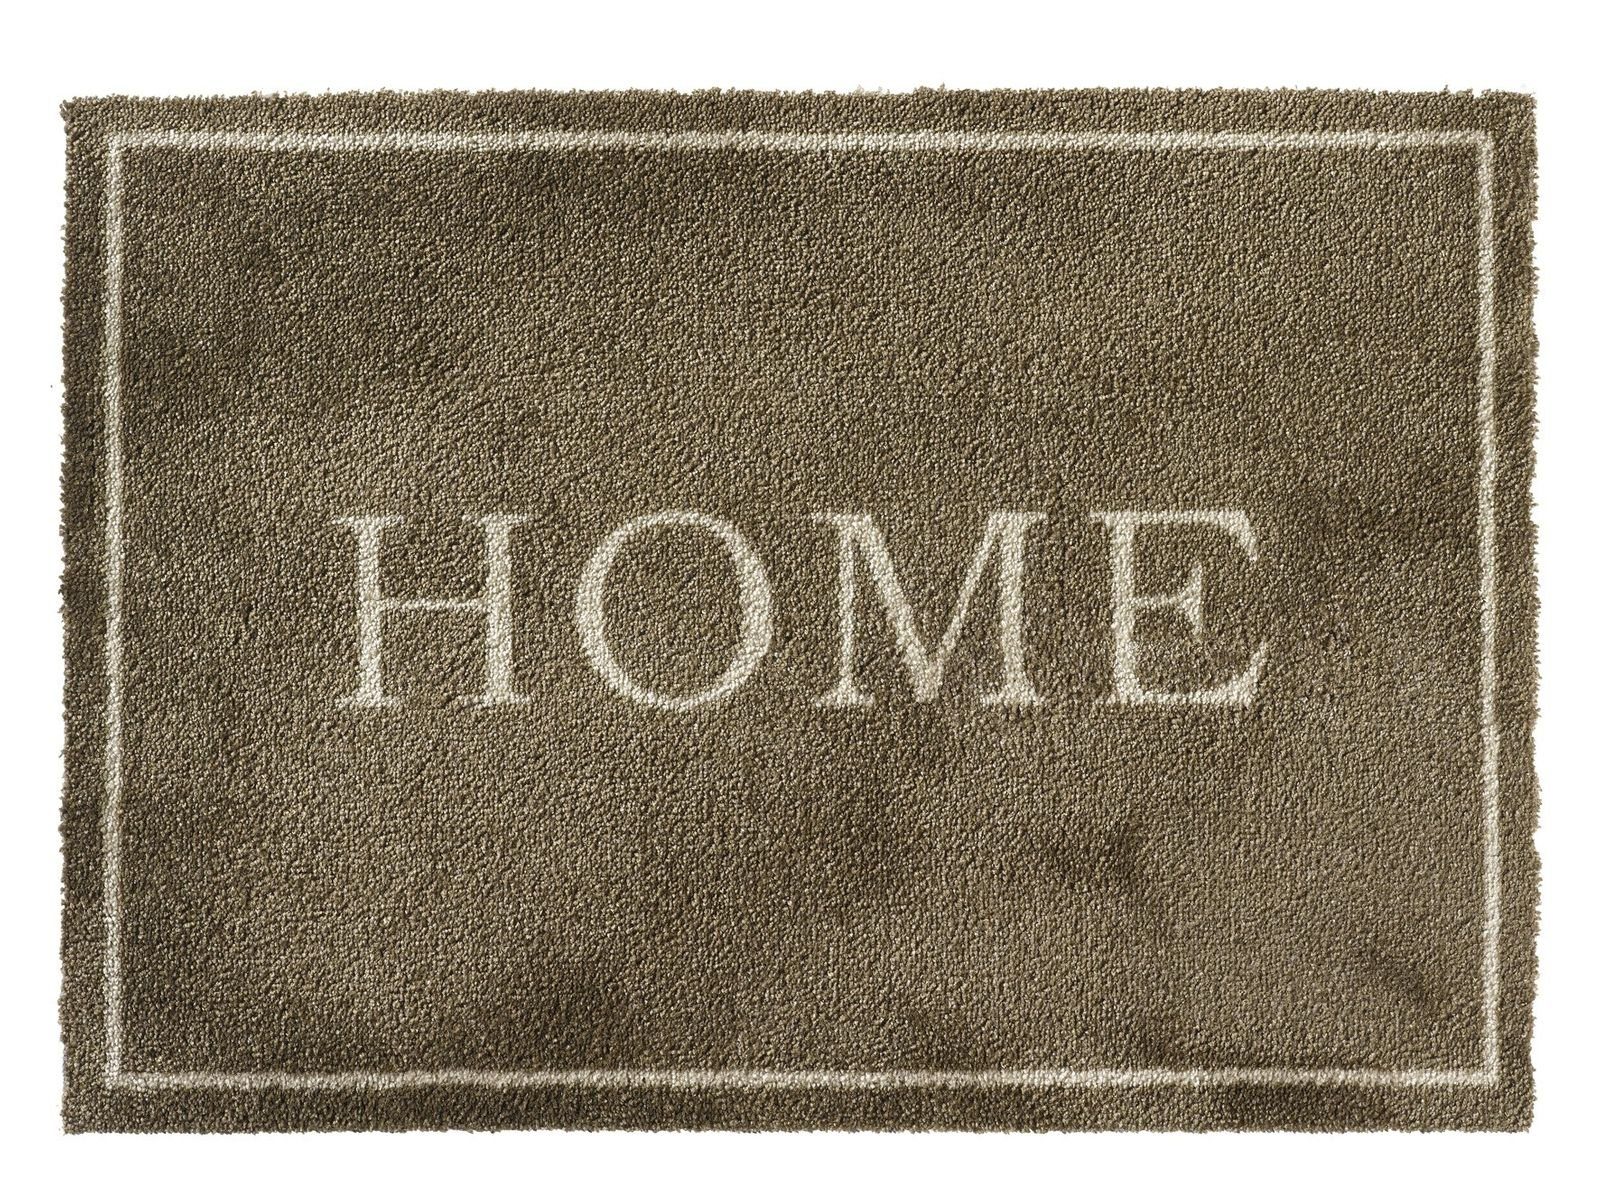 Fußmatte MD Entree Soft&Deco Eingangsmatte - Teppichmatte - Küchenteppich, MD Entree, rechteckig, Höhe: 8 mm, bei 30° waschbar, anti-rutsch, 50 x 70 cm, Home, beige